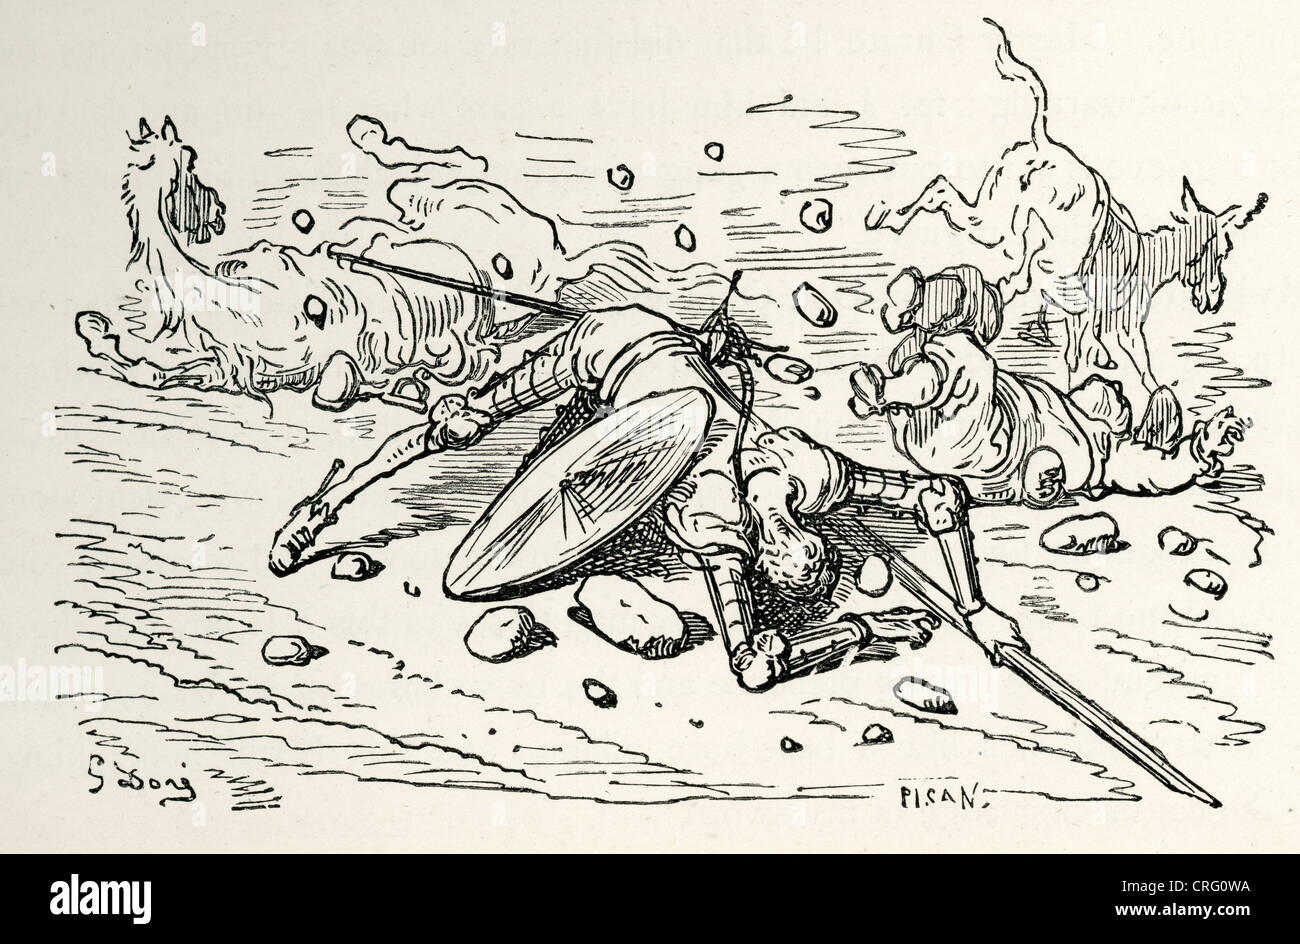 Don Quijote und Sancho Panza gefallen. Illustration von Gustave Dore von Don Quijote. Stockfoto